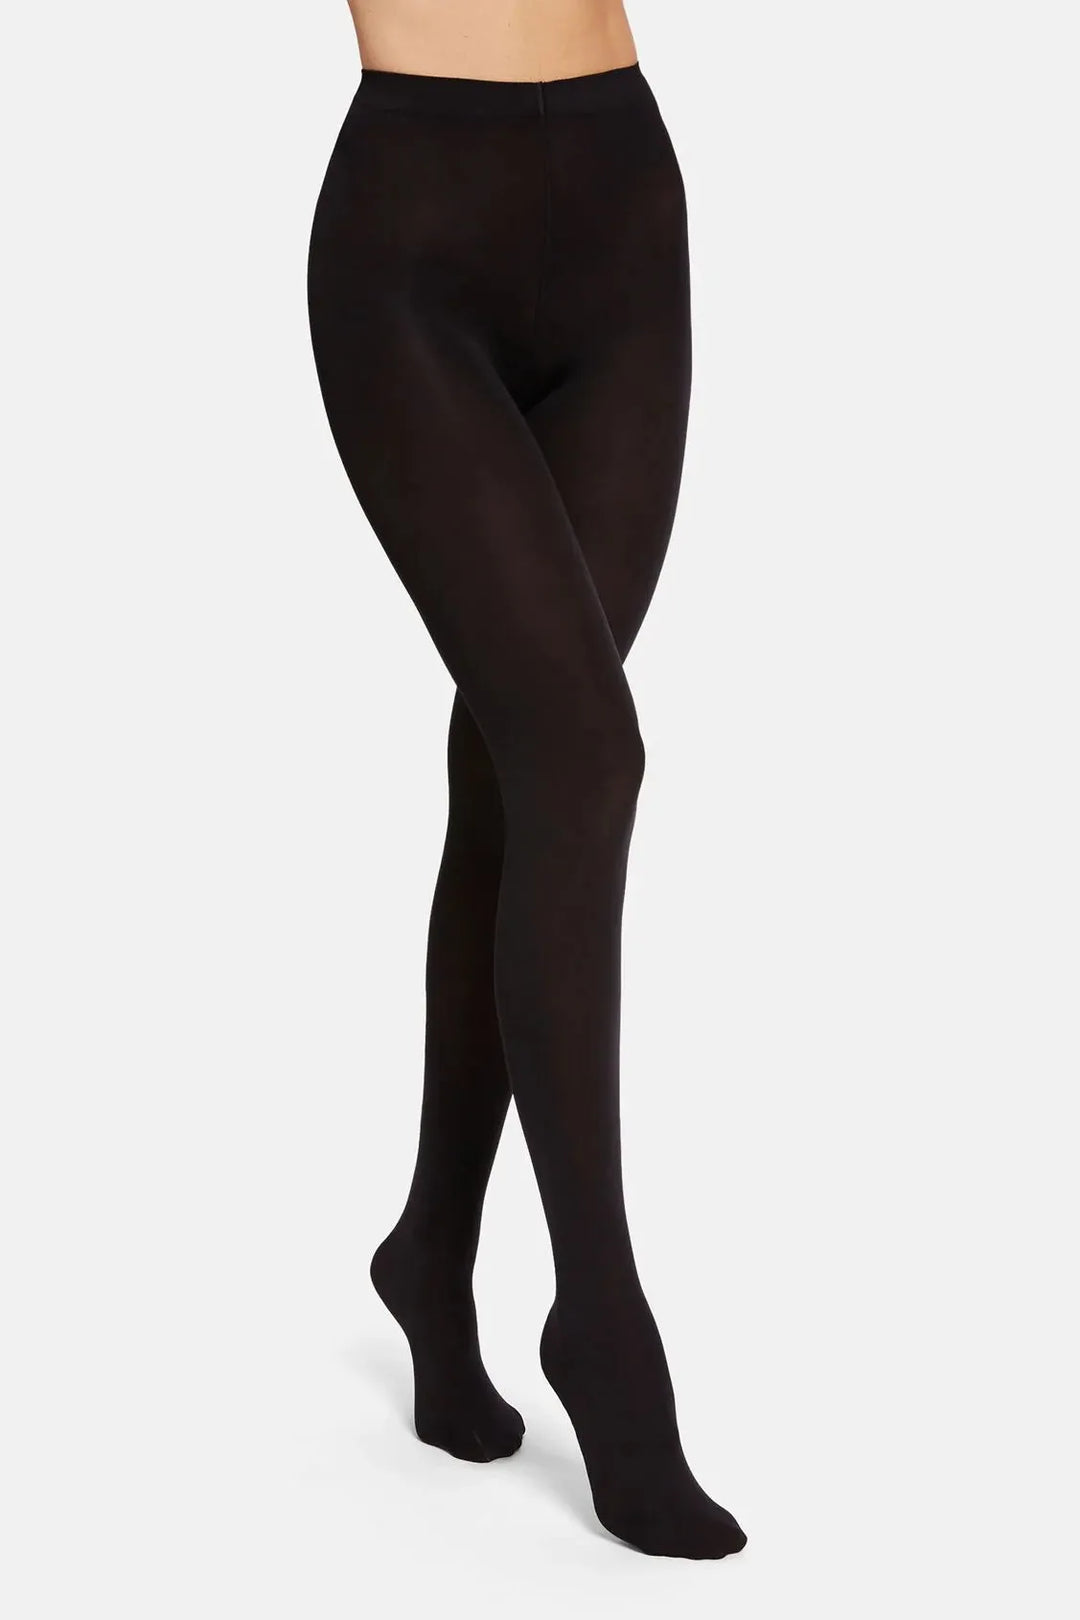 Strømpebukser | WOLFORD Opaque tights, 70 denier, black